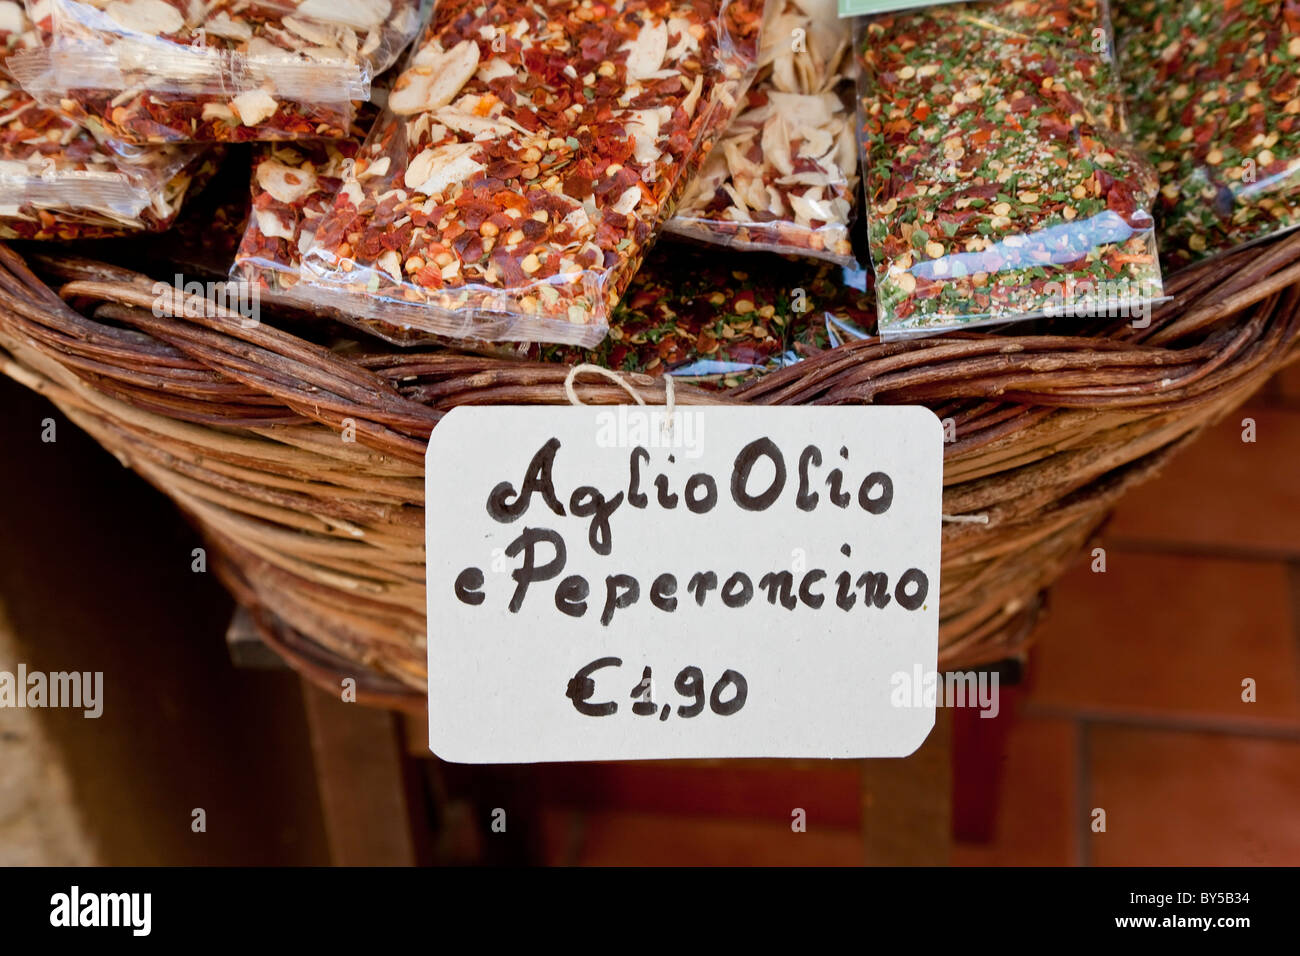 Peperoncino séché flocons de piment pour l'Aglio Olio sauce pour pâtes, Pienza, Toscane, Italie Banque D'Images